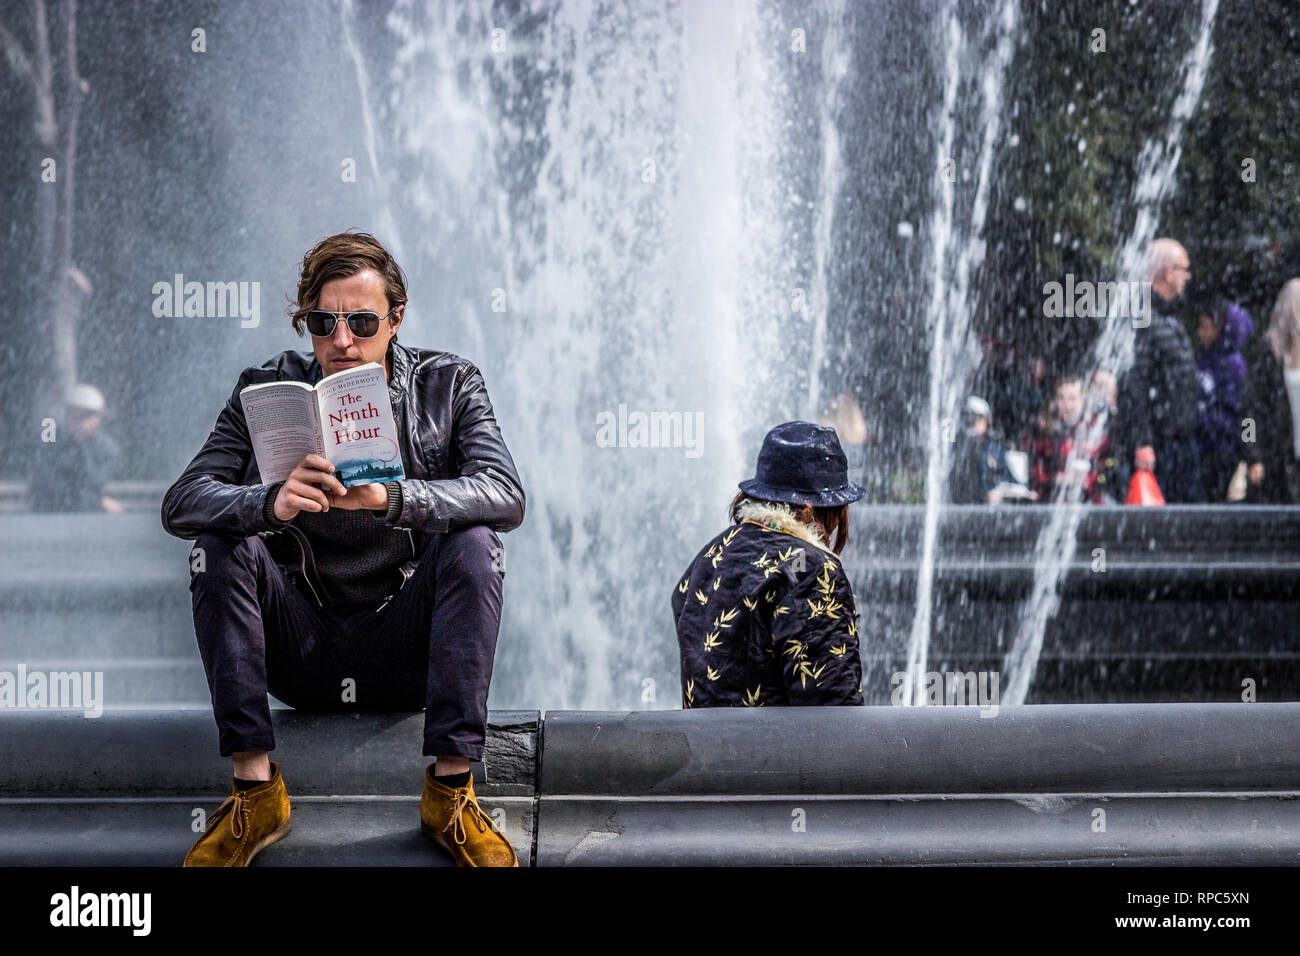 Washington Square Park, New York, Stati Uniti d'America, 16 ottobre 2018. Un giovane uomo in occhiali da sole sedette accanto a una fontana di acqua la lettura di un libro Foto Stock